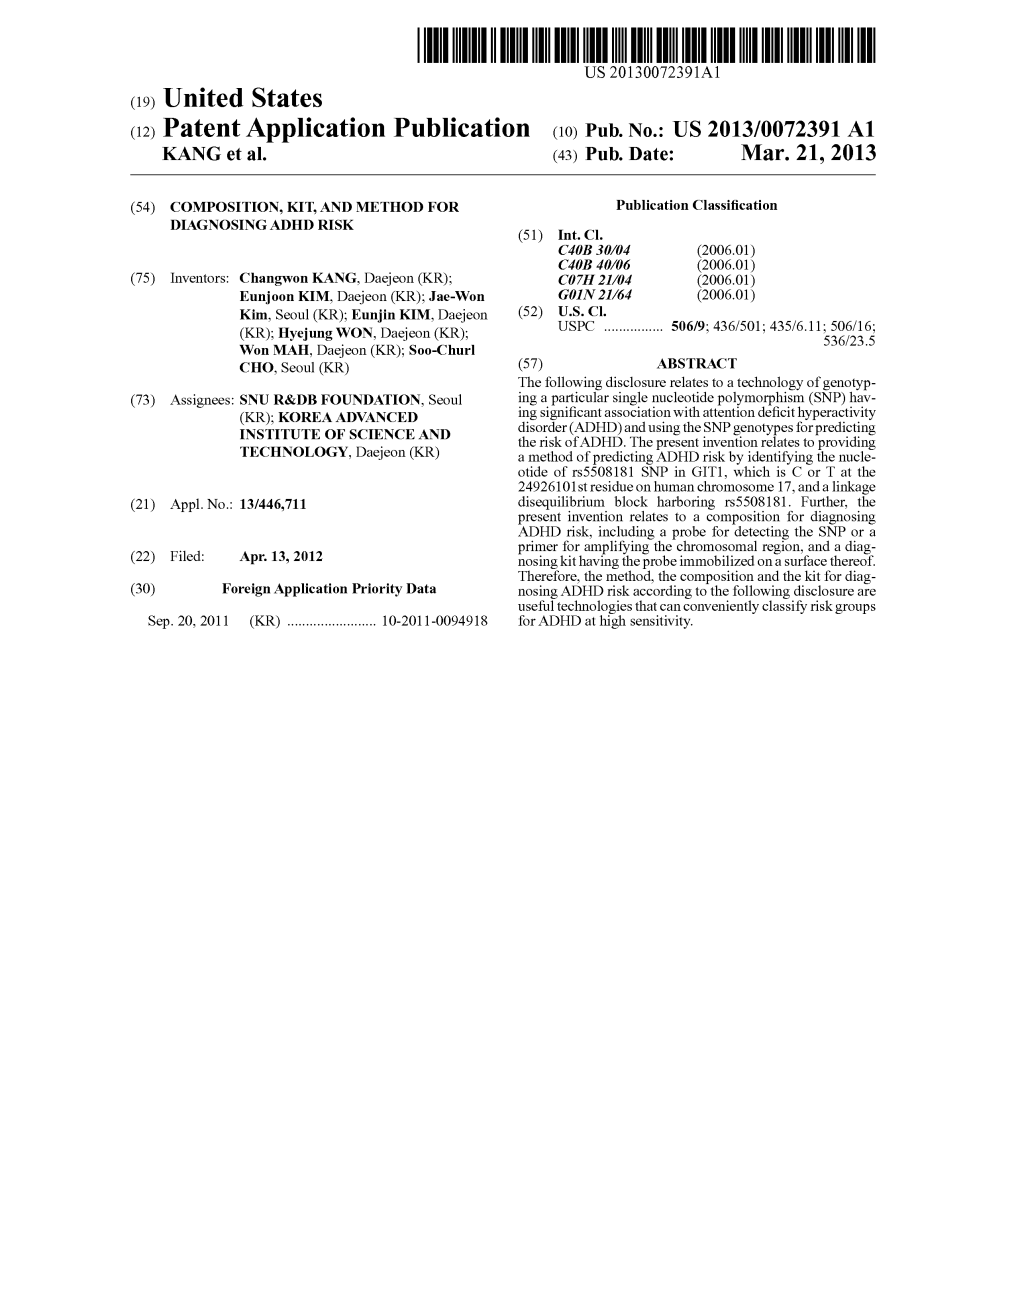 (12) Patent Application Publication (10) Pub. No.: US 2013/0072391 A1 KANG Et Al